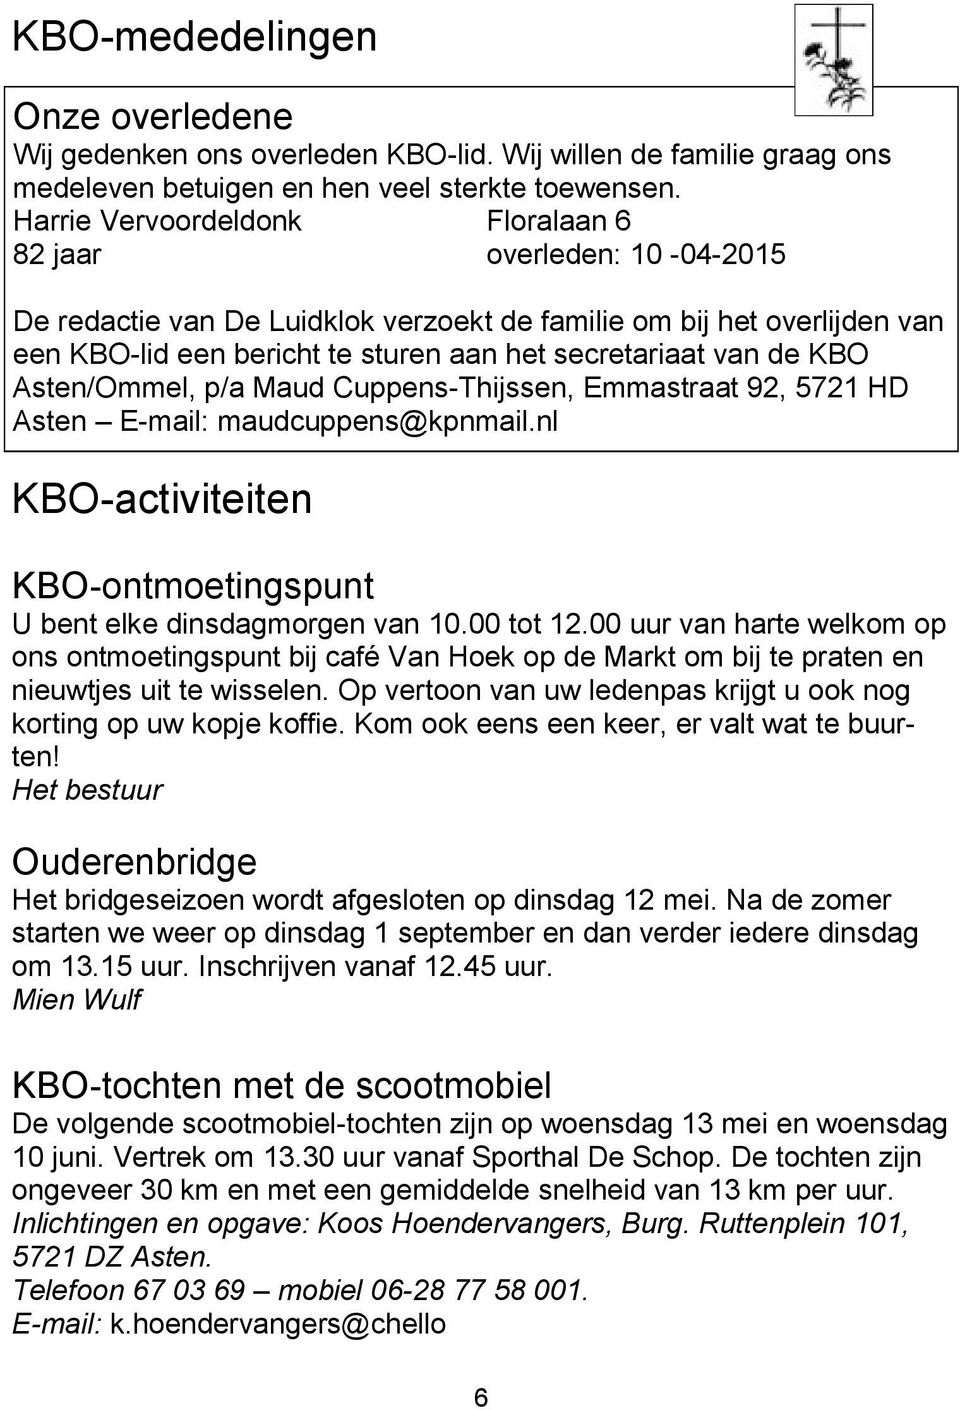 KBO Asten/Ommel, p/a Maud Cuppens-Thijssen, Emmastraat 92, 5721 HD Asten E-mail: maudcuppens@kpnmail.nl KBO-activiteiten KBO-ontmoetingspunt U bent elke dinsdagmorgen van 10.00 tot 12.